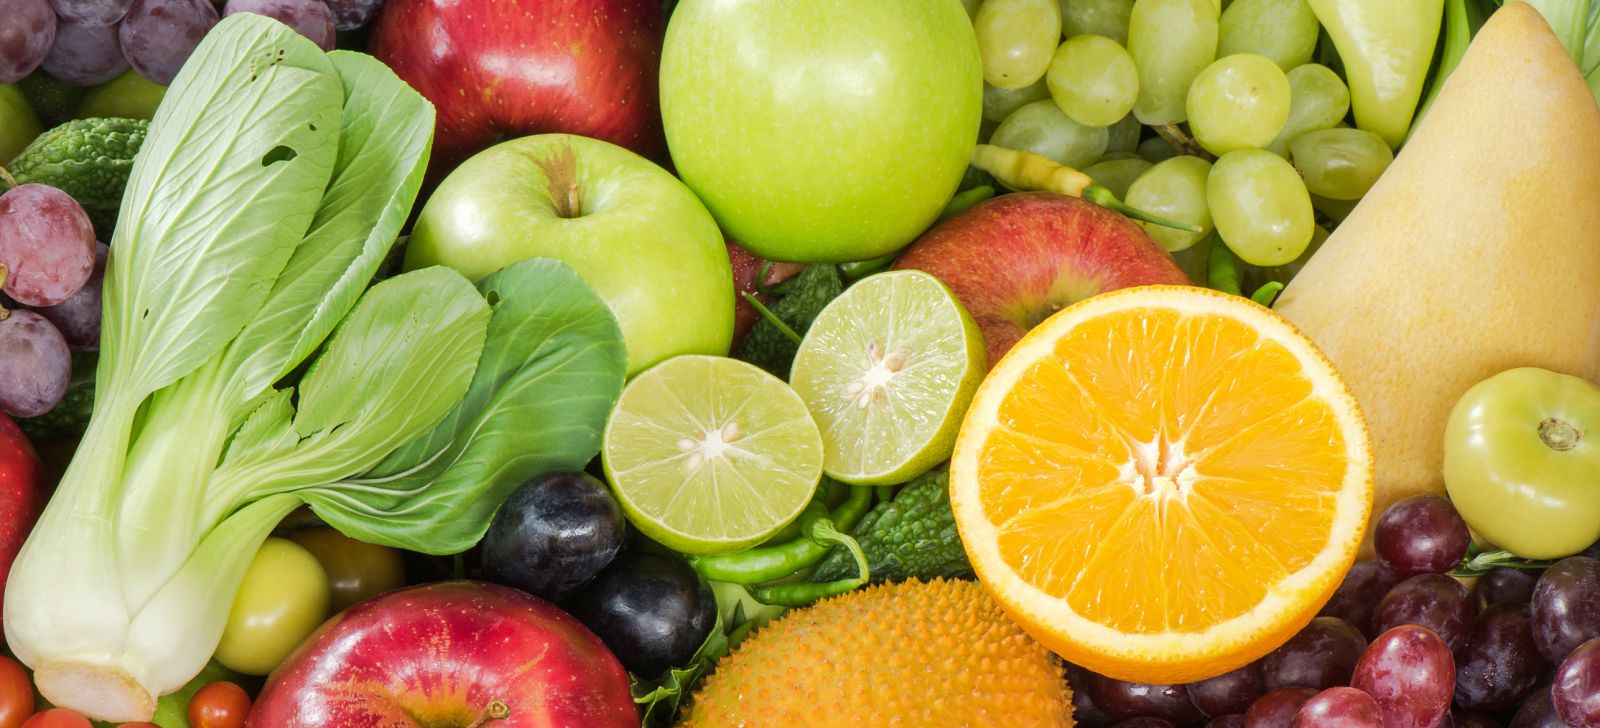 Frutas y verduras frescas.